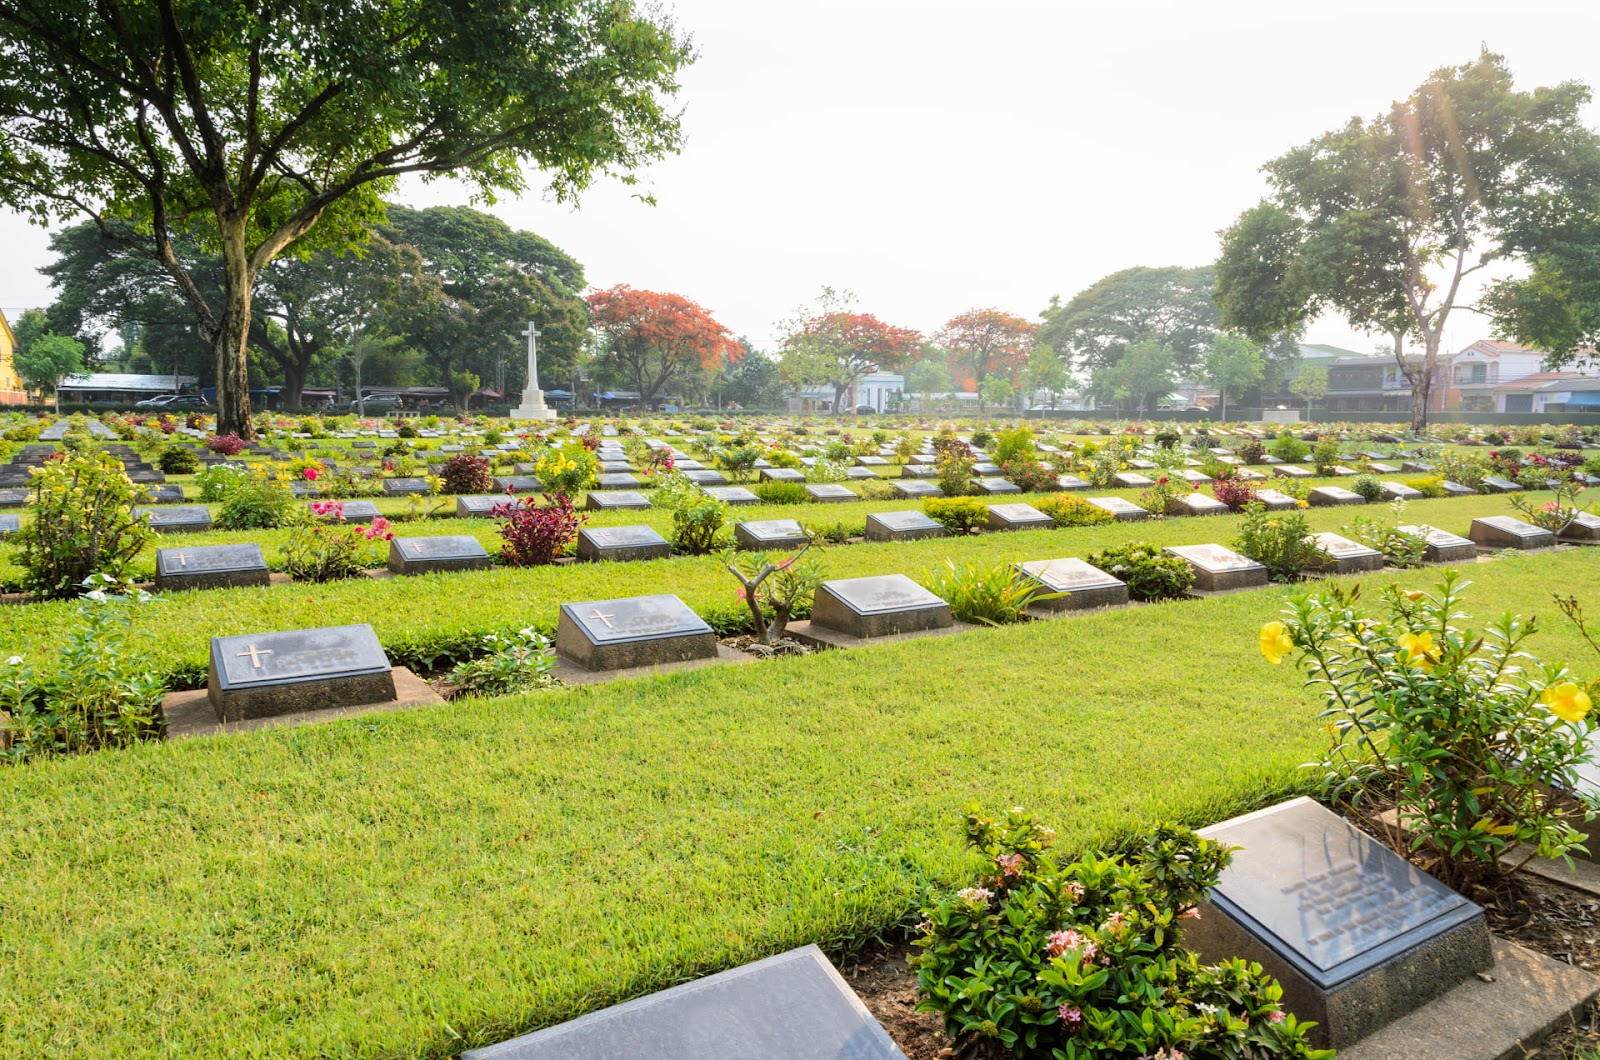 O cemitério parque se destaca entre os tipos de cemitérios.